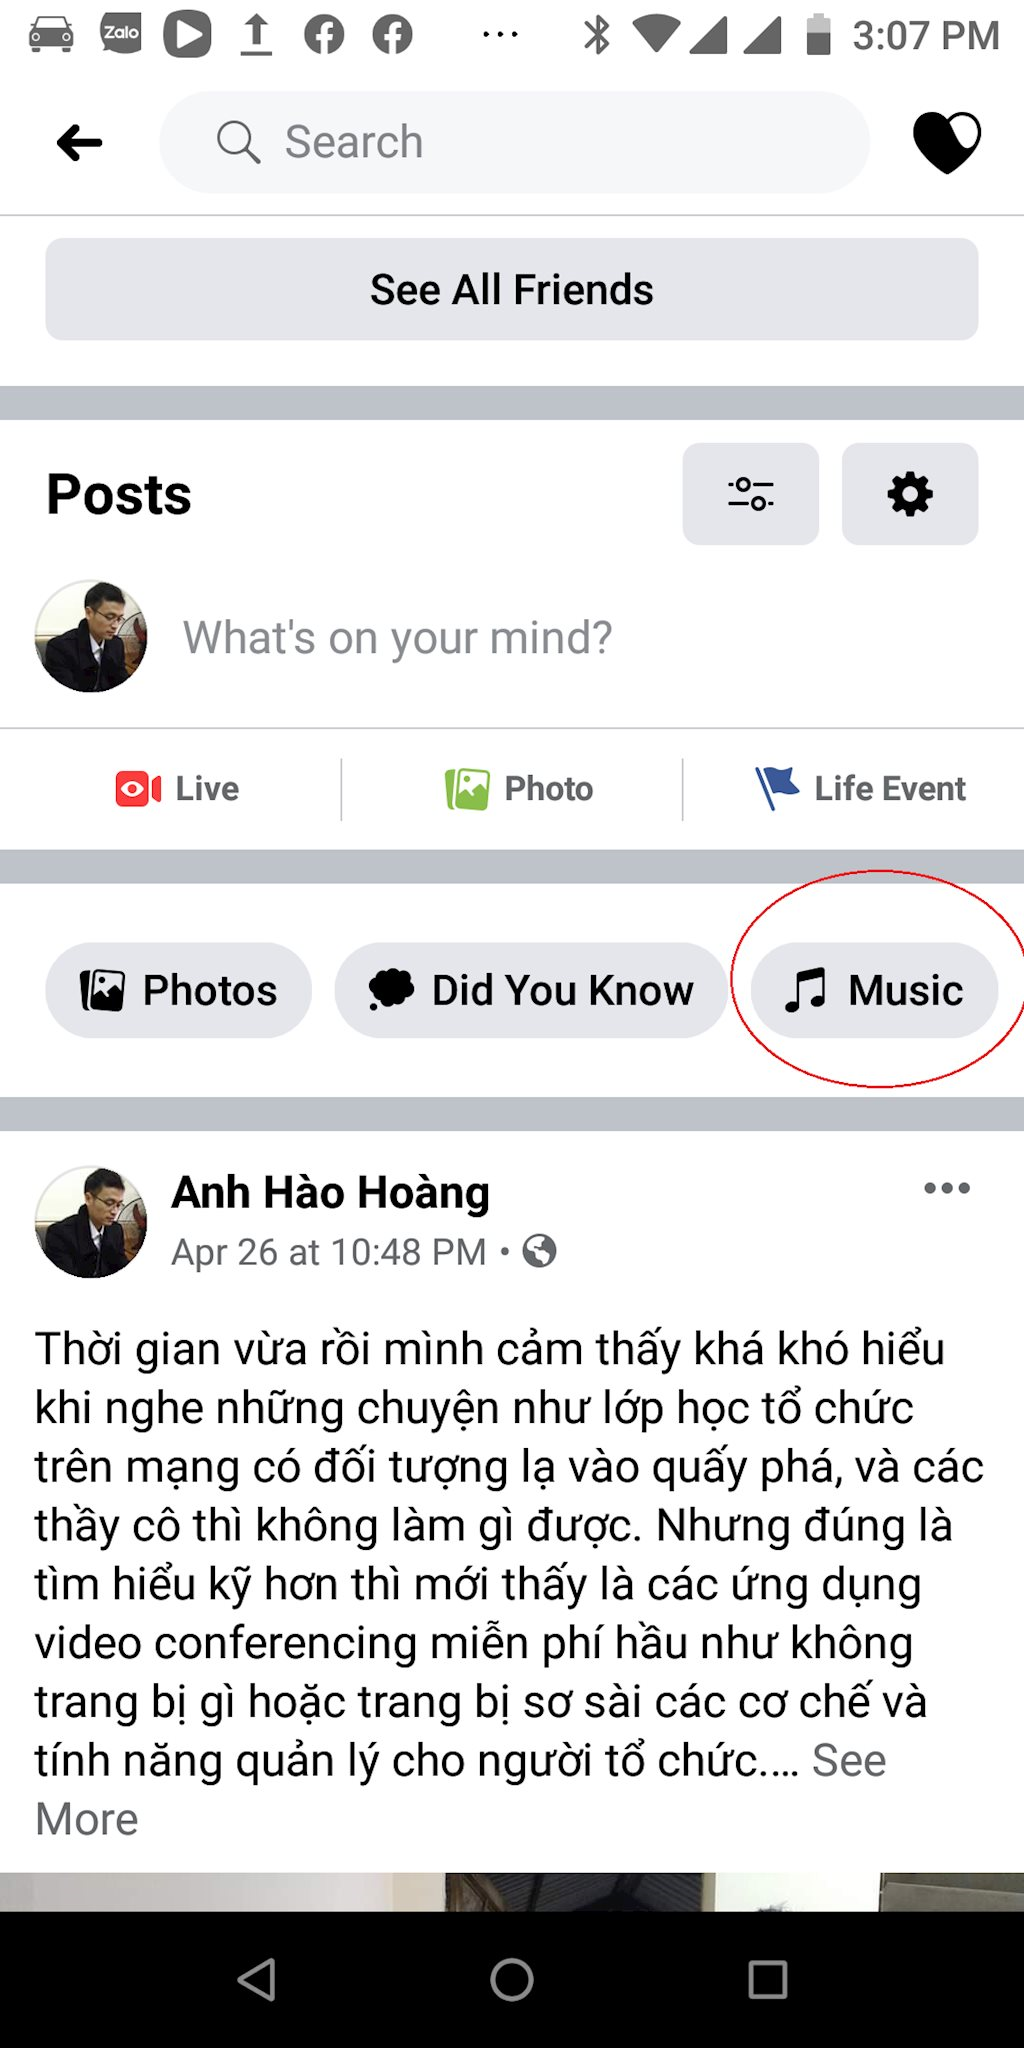 Bạn đã thấy một số bạn bè của mình thêm nhạc vào trang cá nhân Facebook của họ chưa? Đó chỉ là một trong những tính năng tuyệt vời của Facebook mới và bạn cũng có thể làm được điều đó. Thêm nhạc vào trang cá nhân của bạn để chia sẻ sở thích âm nhạc với mọi người.